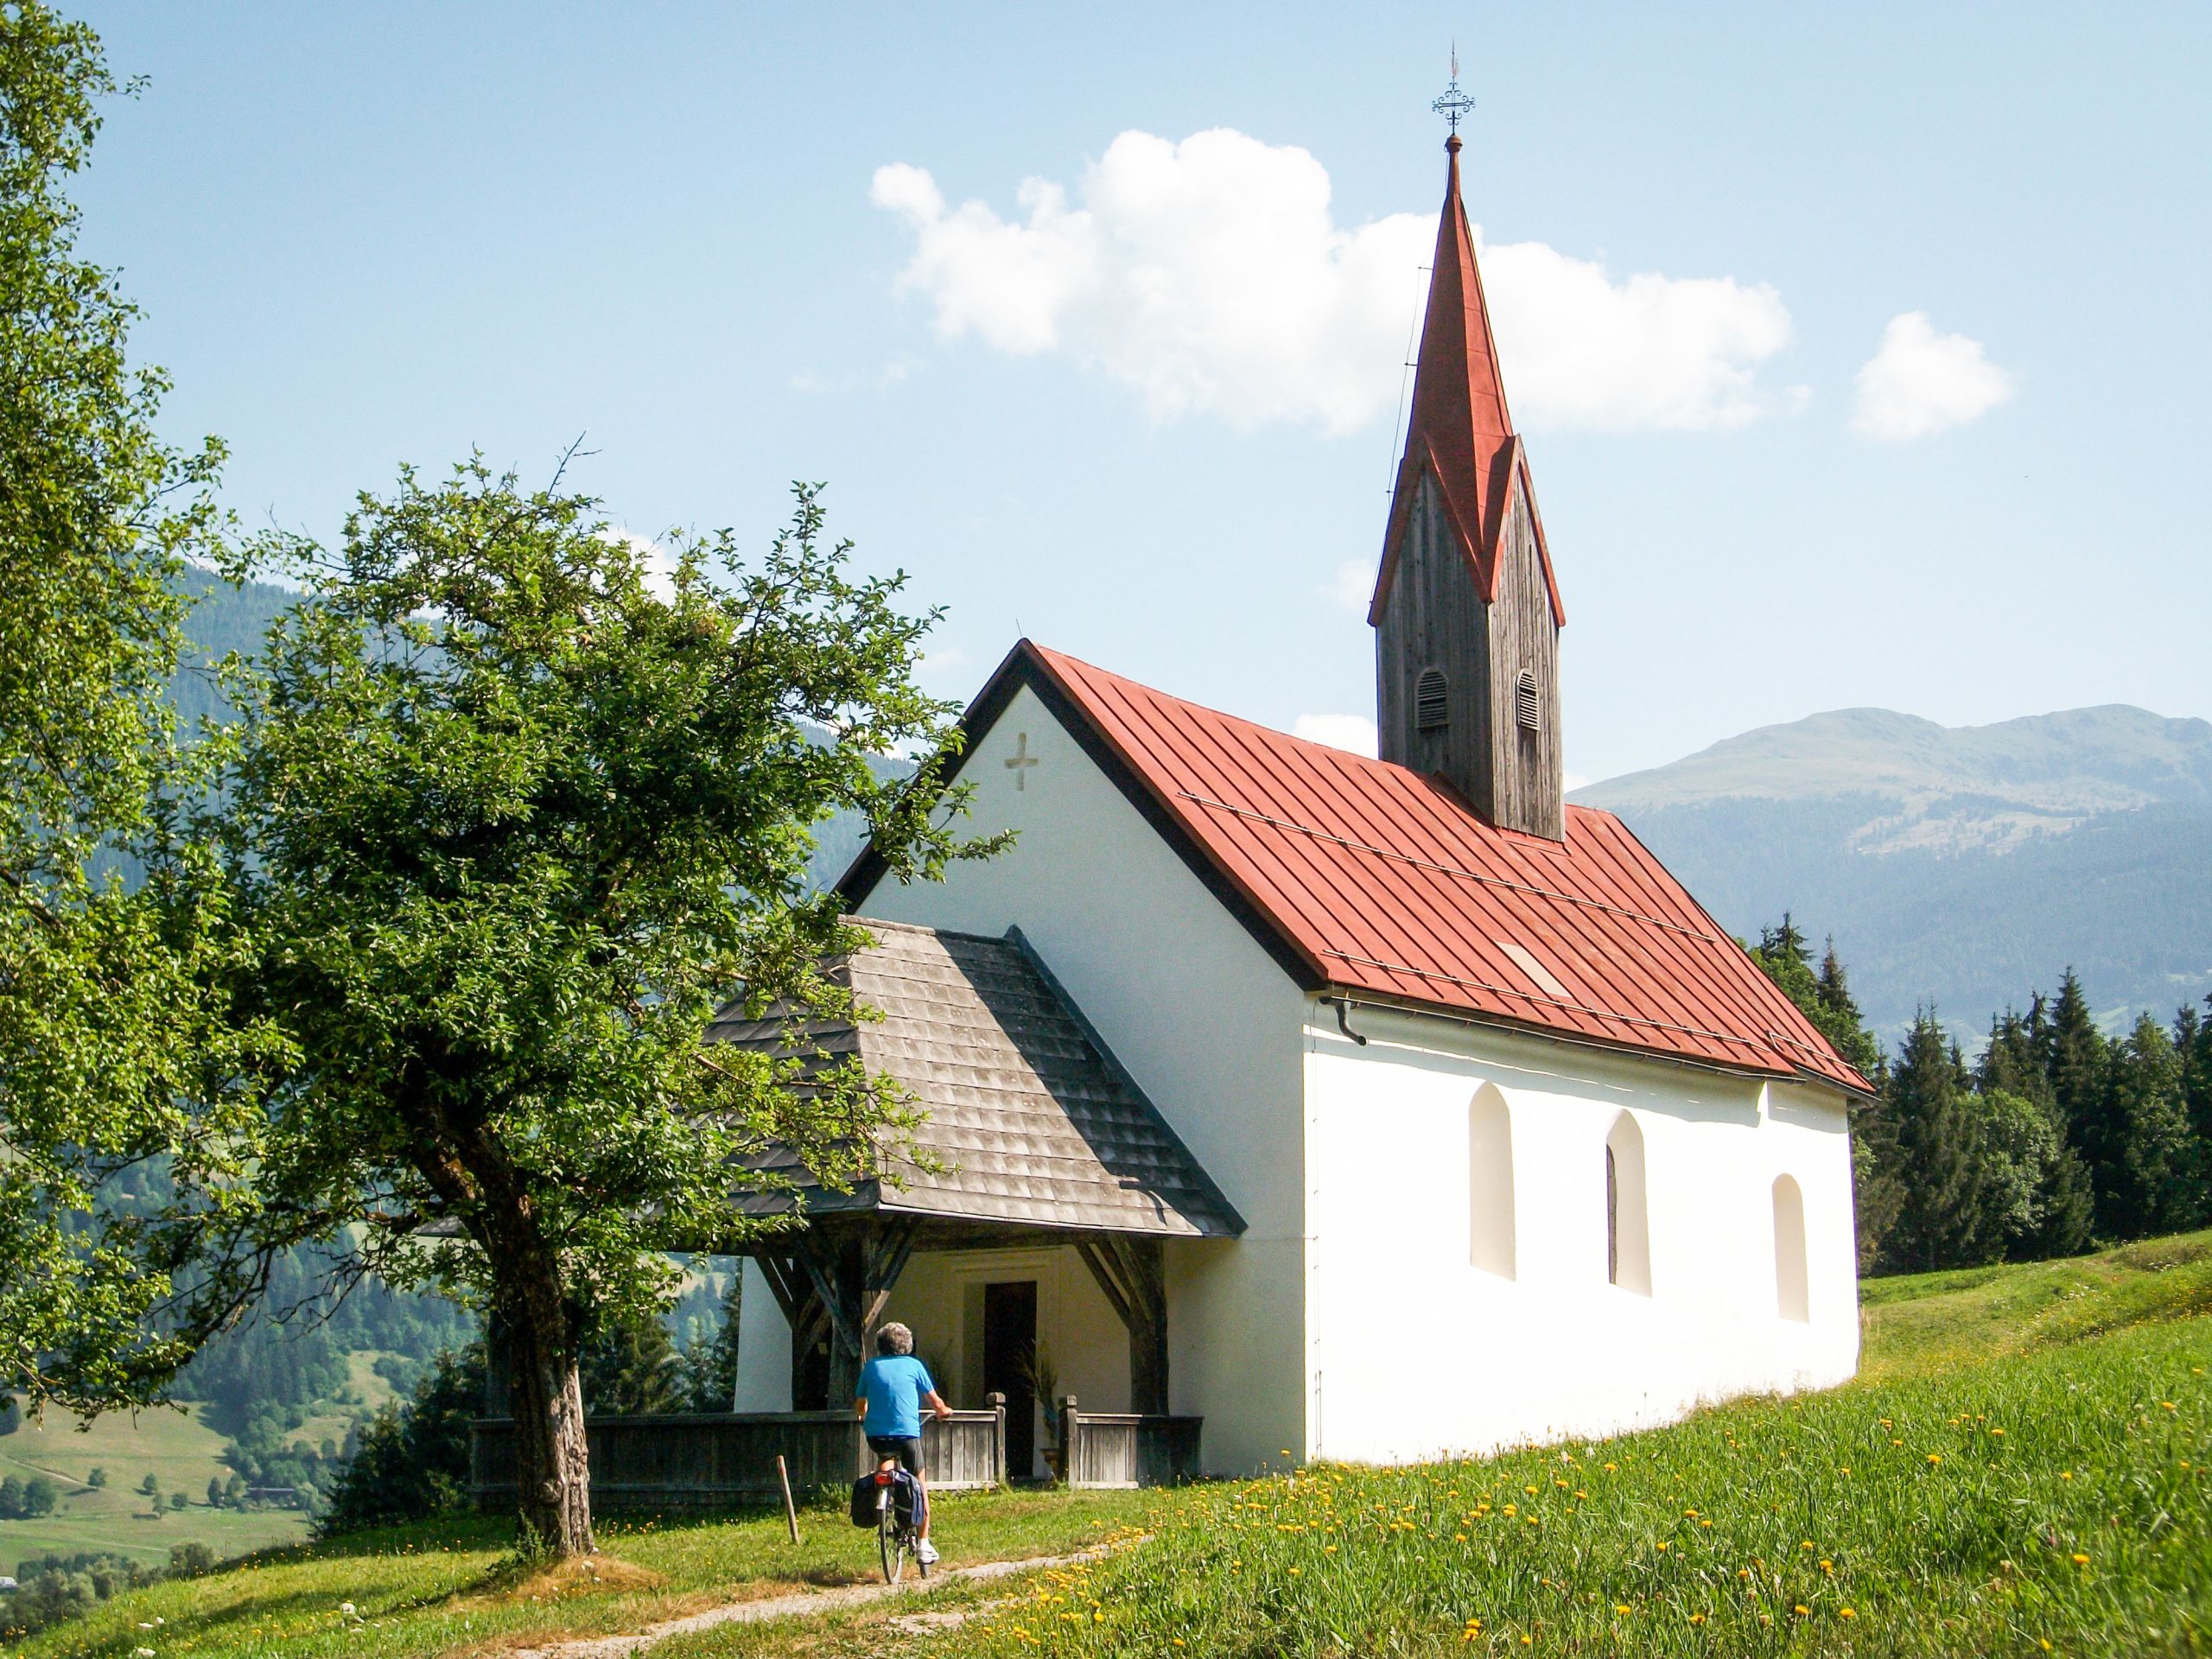 Cicloturista, percorso pianeggiante, paesaggio verde collinare, lungo ciclabile della Drava da Sillian a Villach, Austria